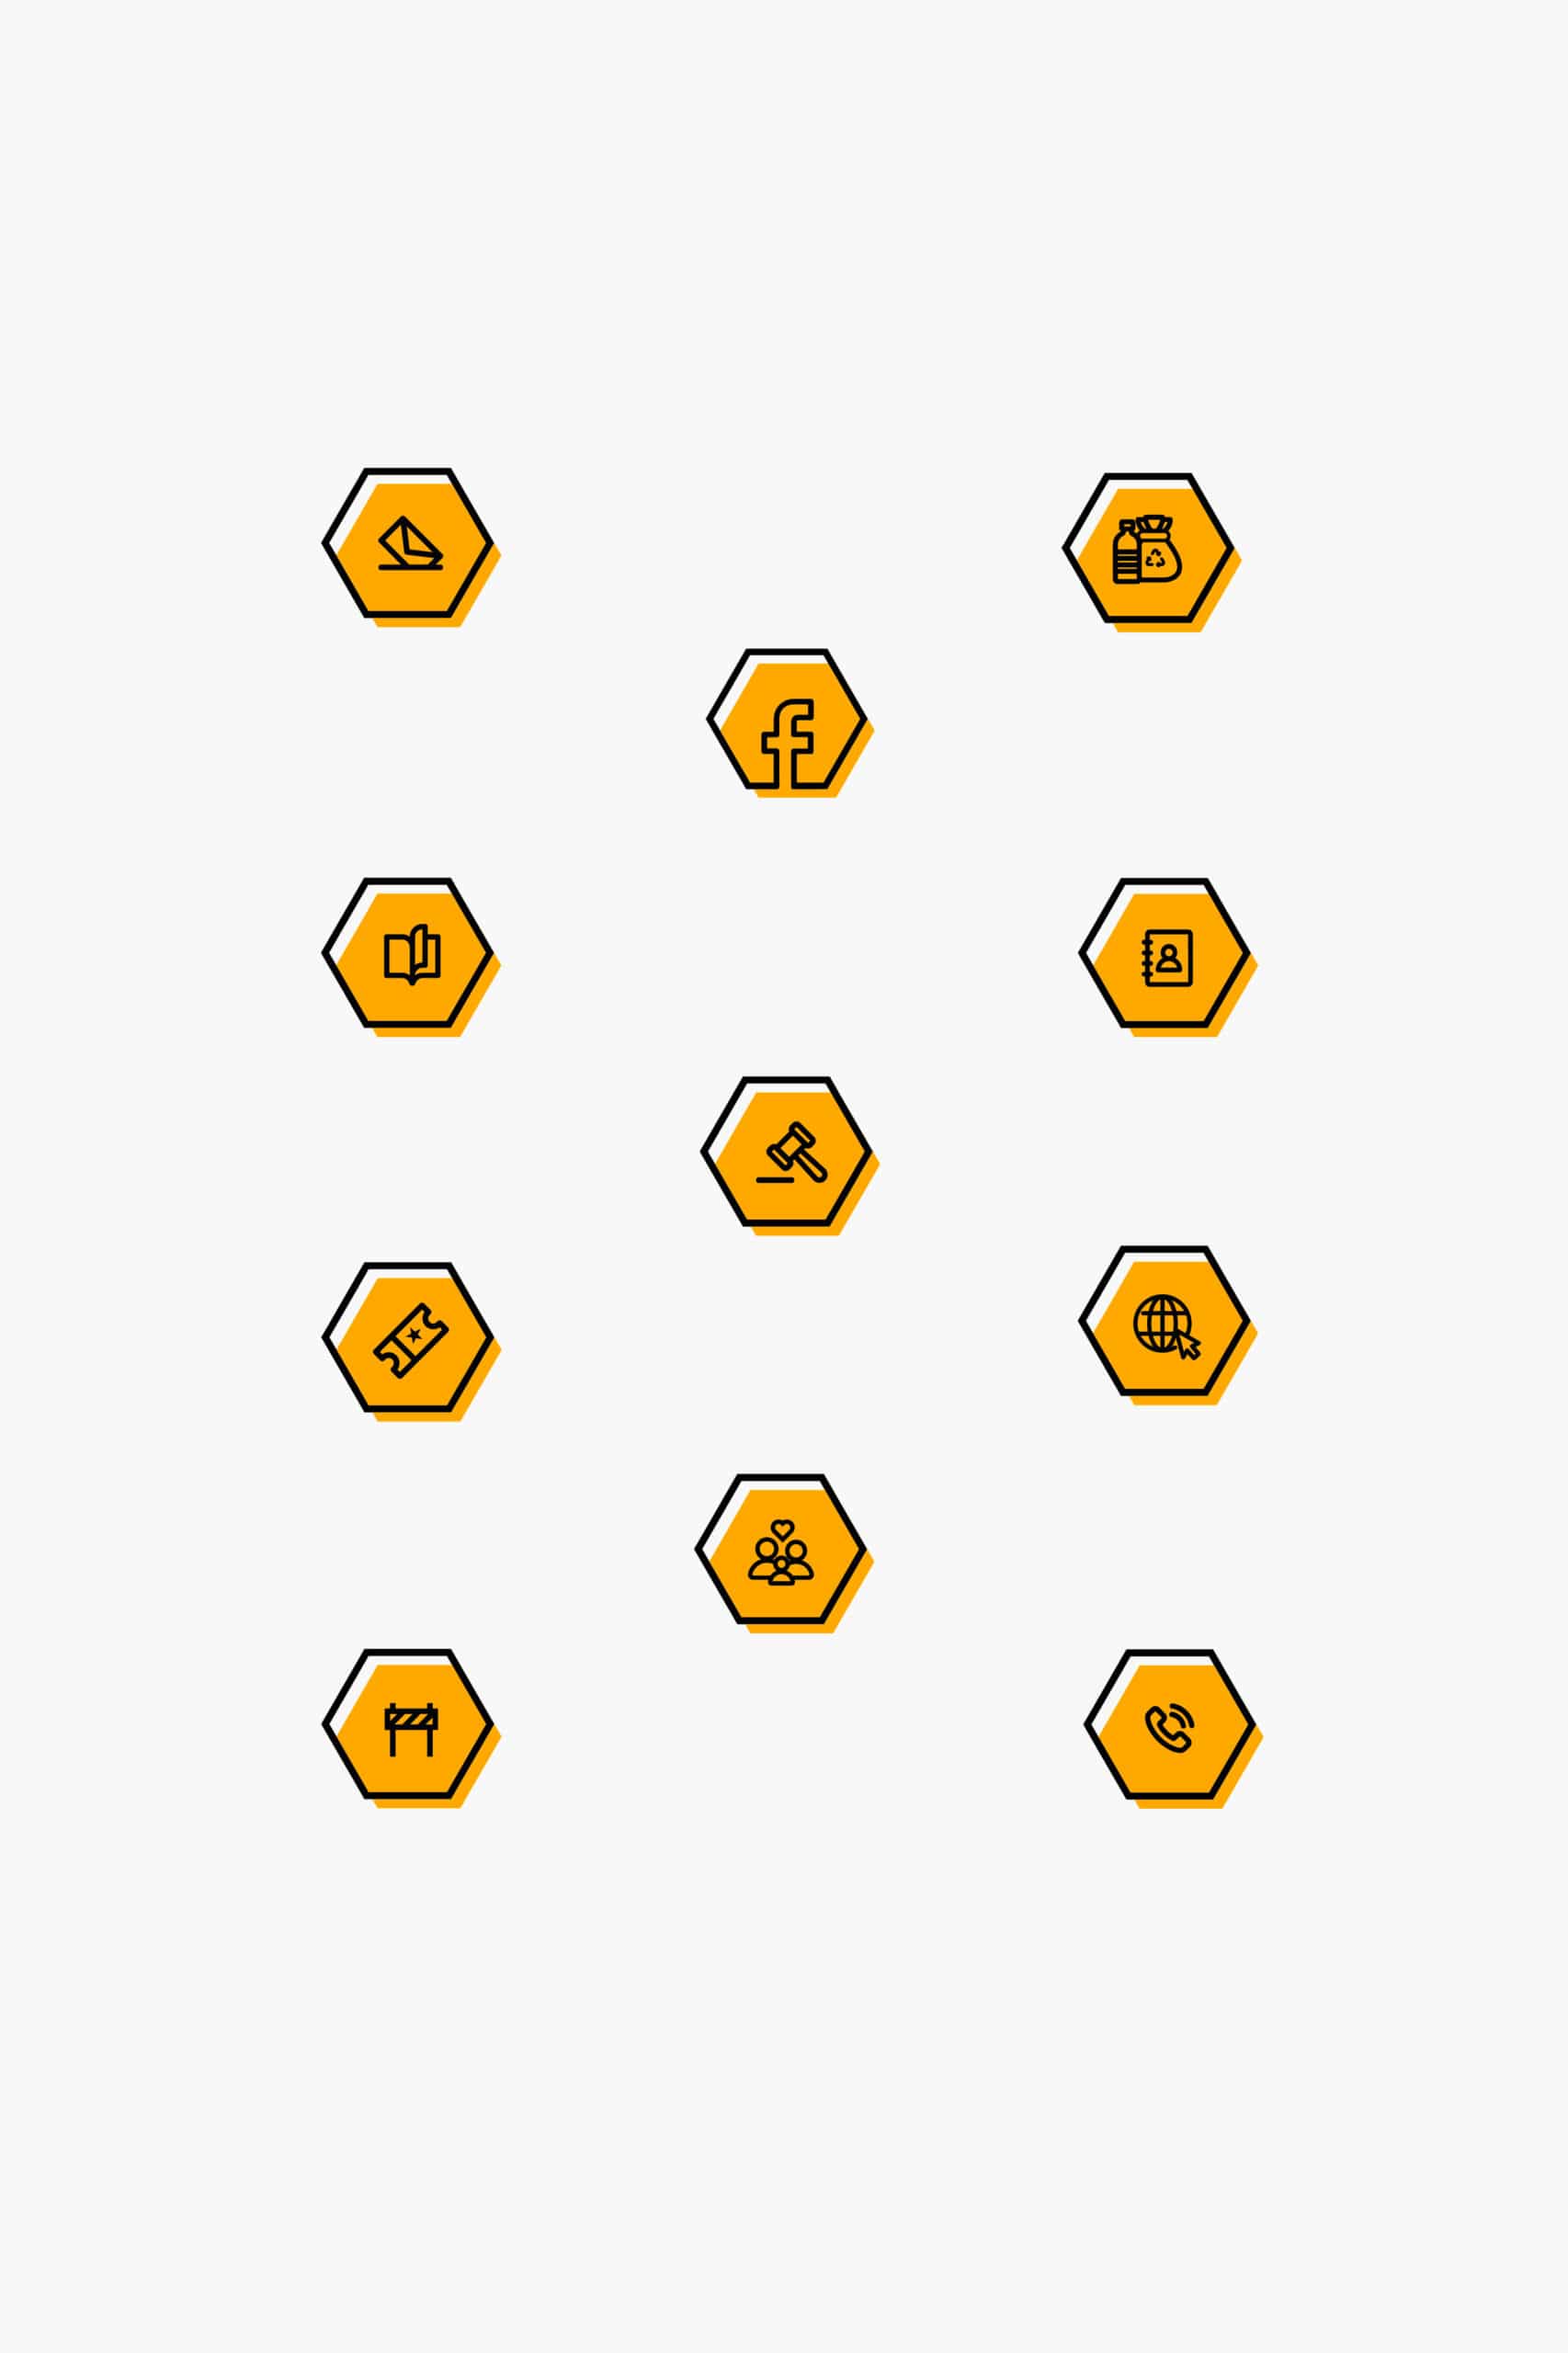 les 11 pictogrammes noir et jaune réalisés sous forme d'hexagones